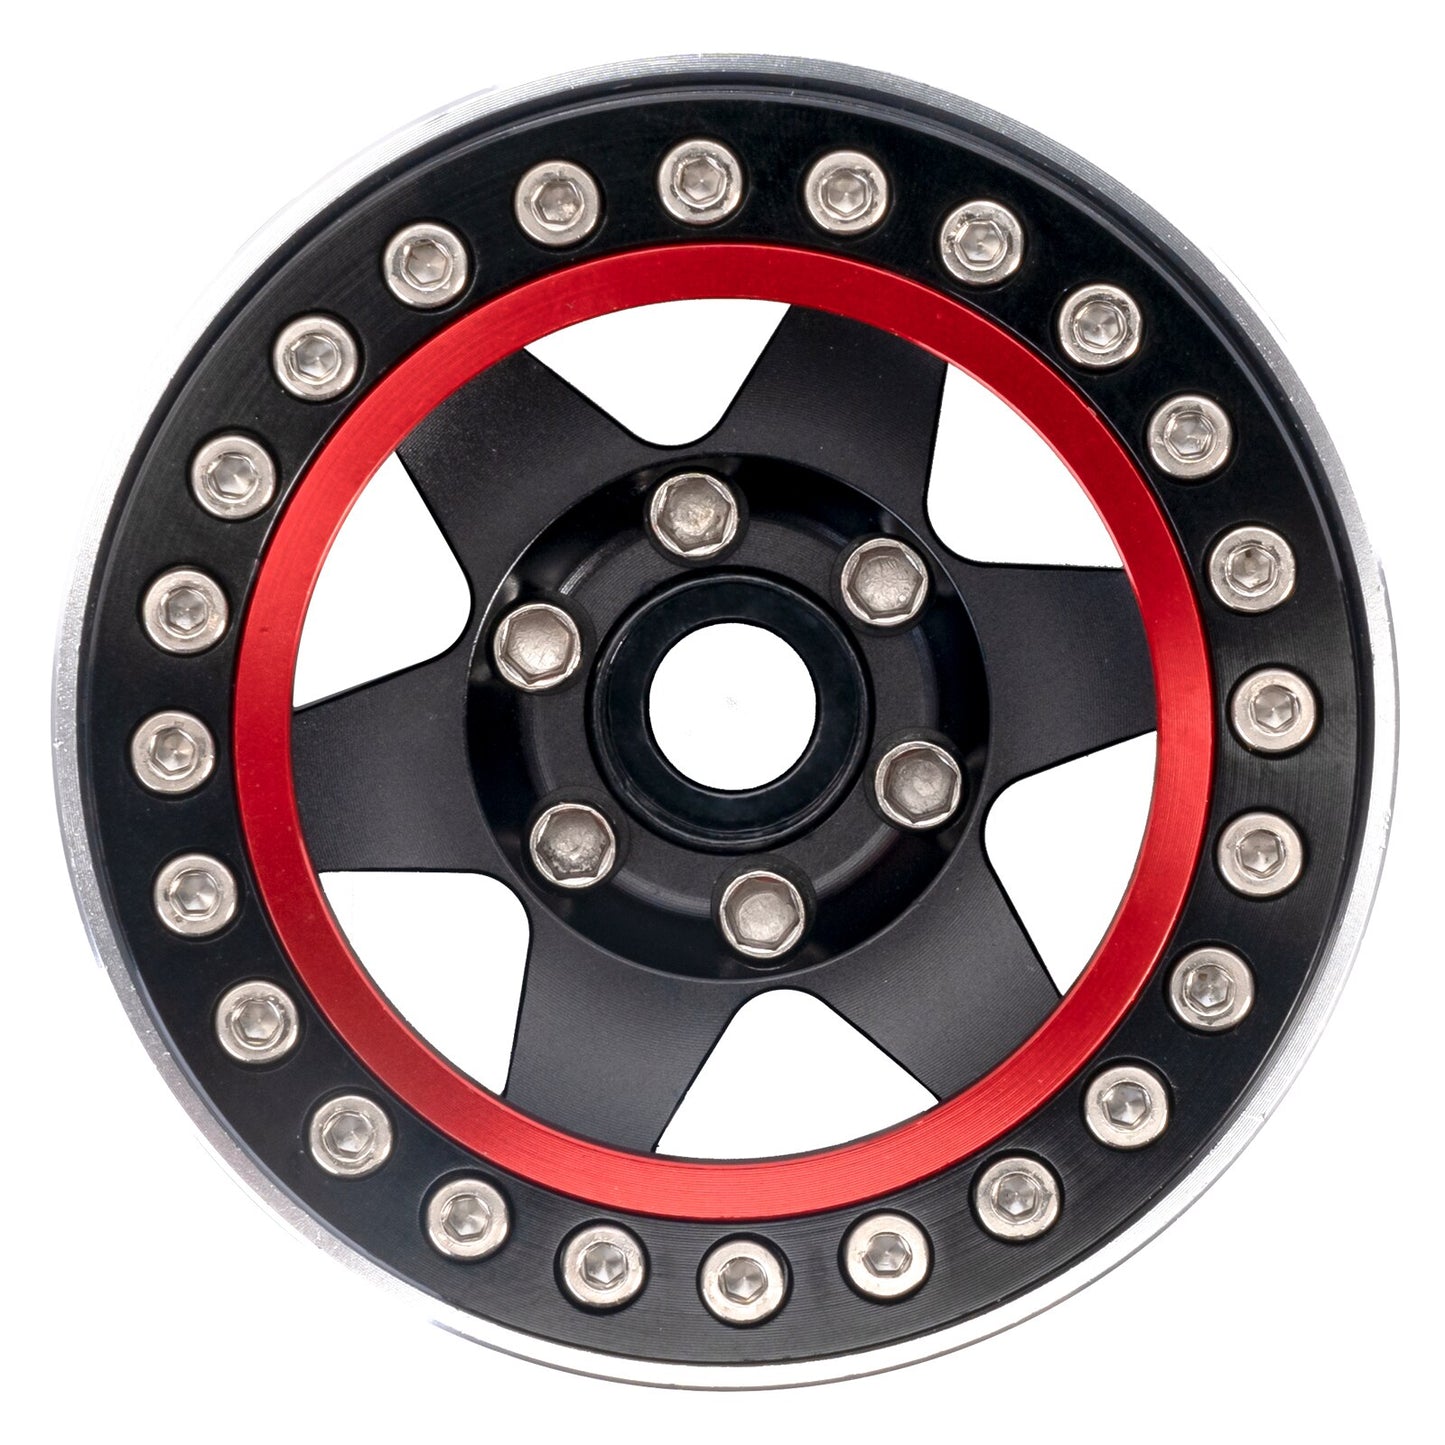 INJORA 4PCS 1.9 Beadlock Wheel Rim Hub CNC Aluminum for 1/10 RC Crawler Car Axial SCX10 90046 AXI03007 TRX4 VS4-10 Gen8 MST CFX